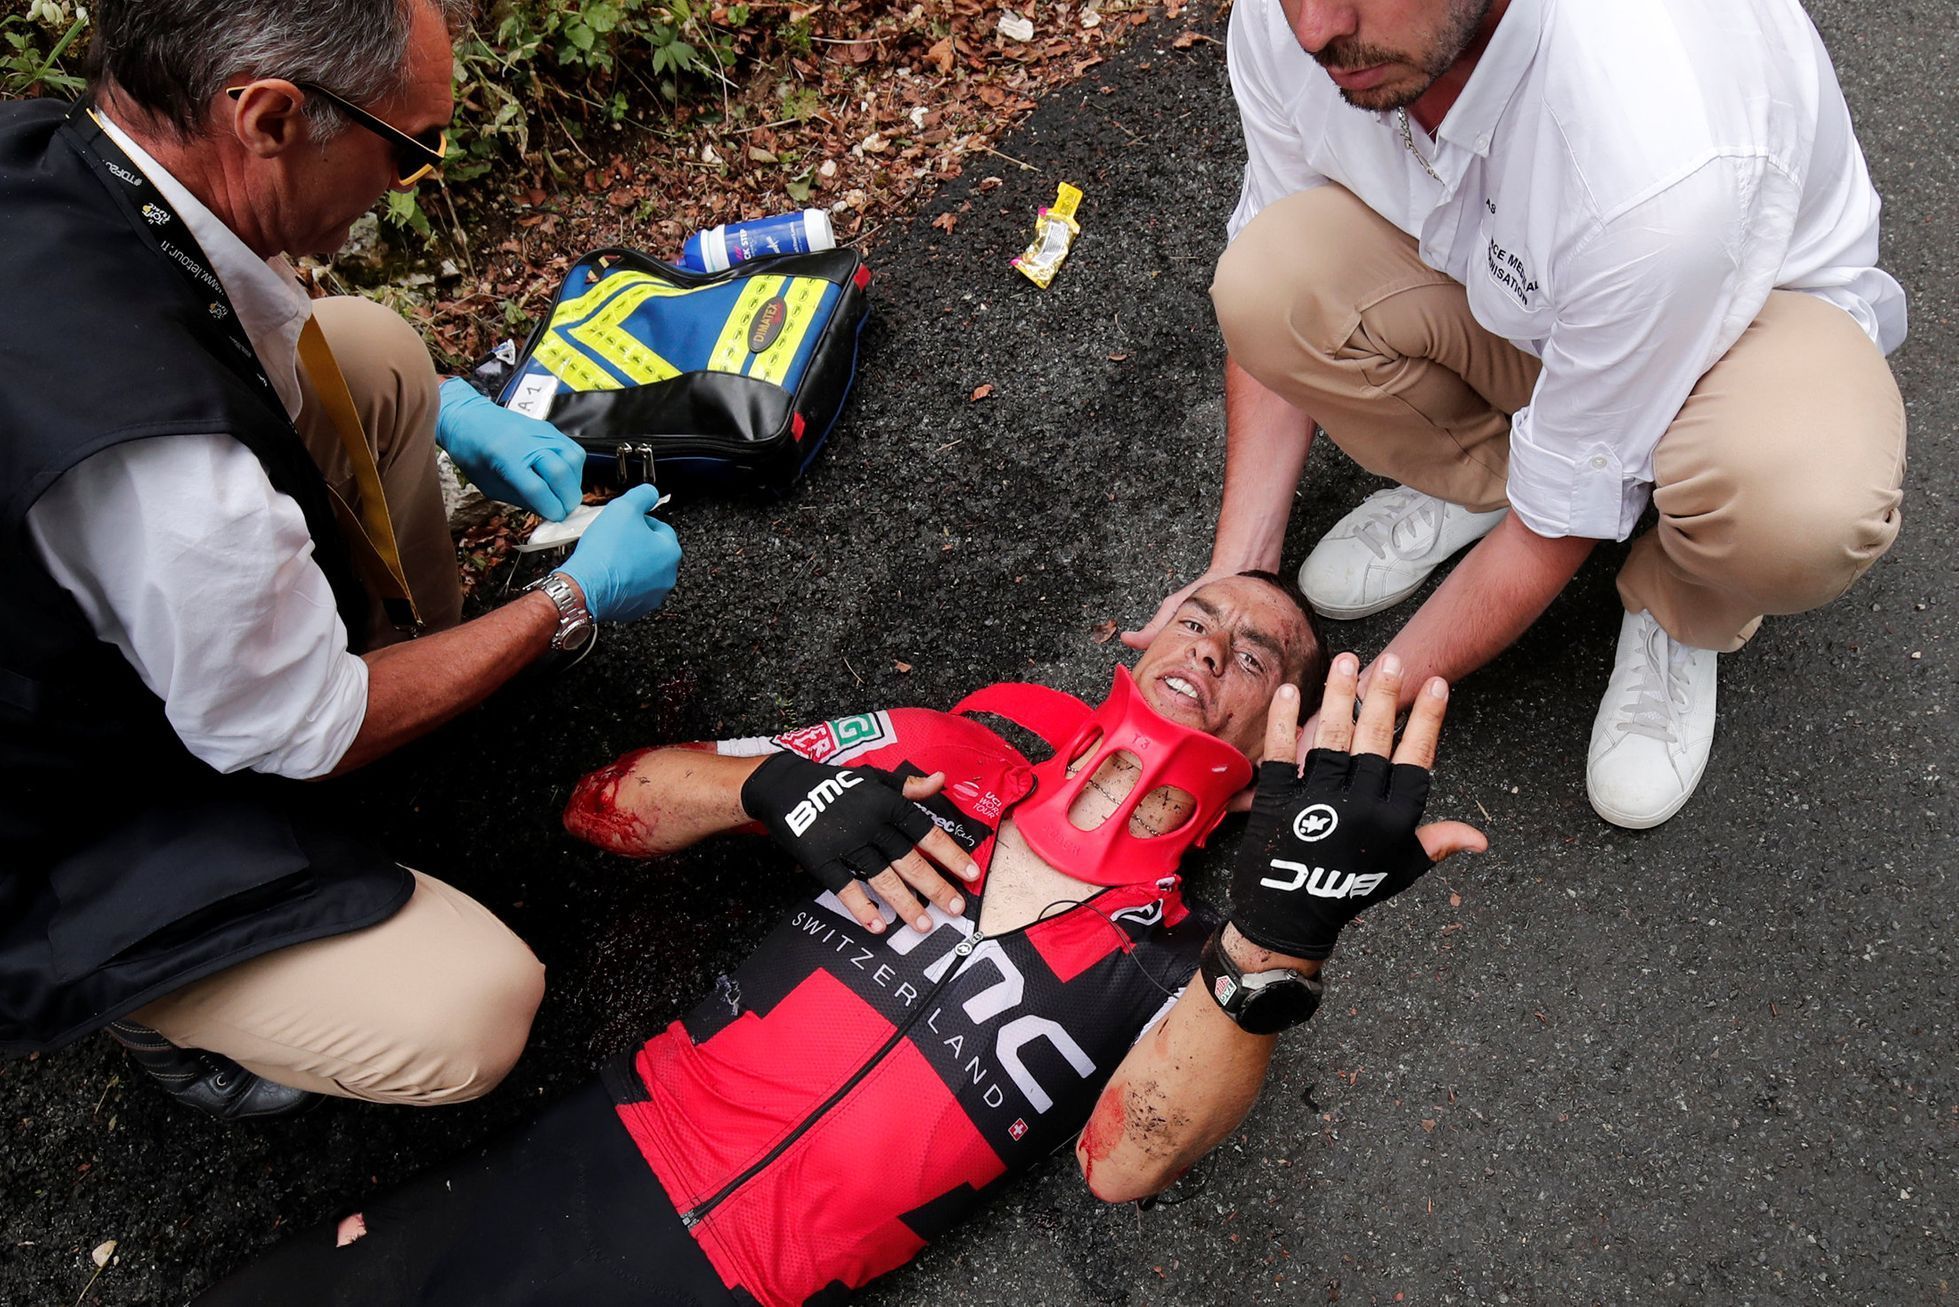 Tour de France 2017, 9. etapa: zraněný Richie Porte